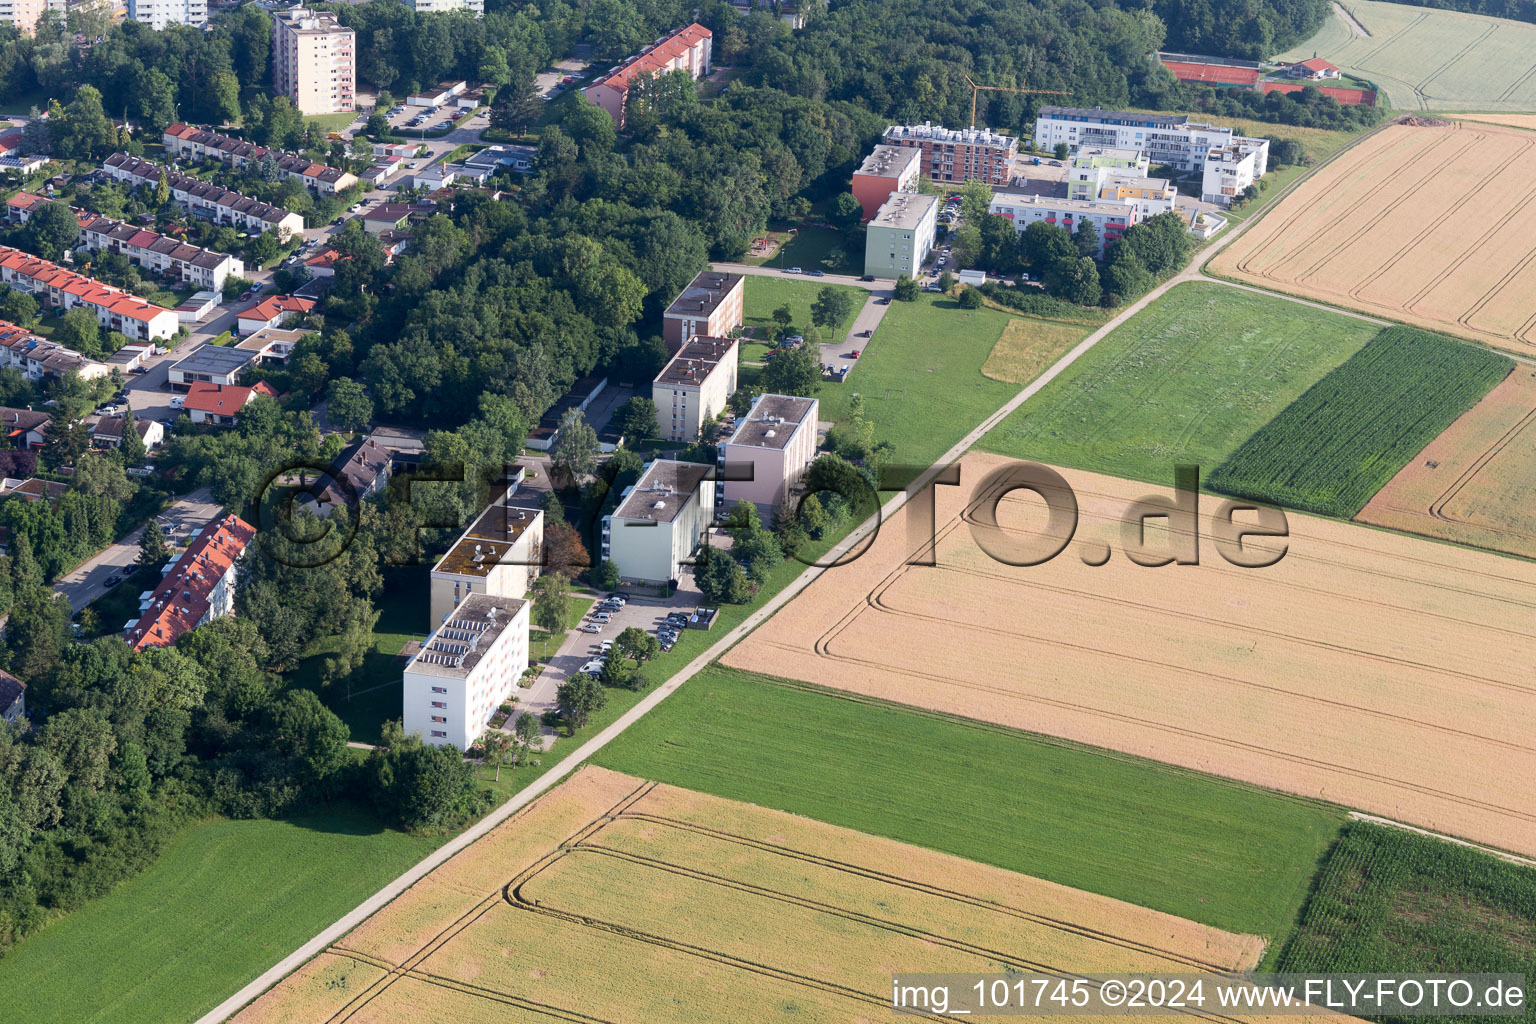 Donauwörth im Bundesland Bayern, Deutschland von der Drohne aus gesehen